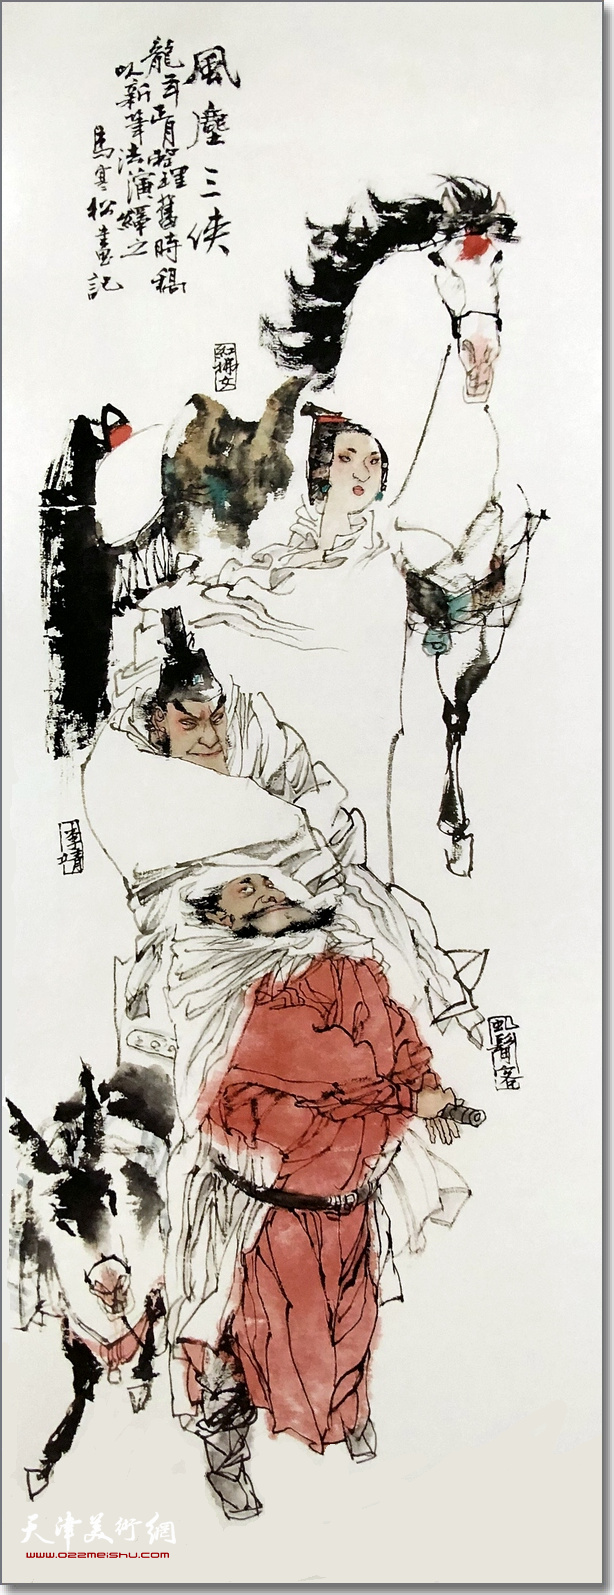 《中国近现代名家画集——马寒松》由天津人民美术出版社出版发行